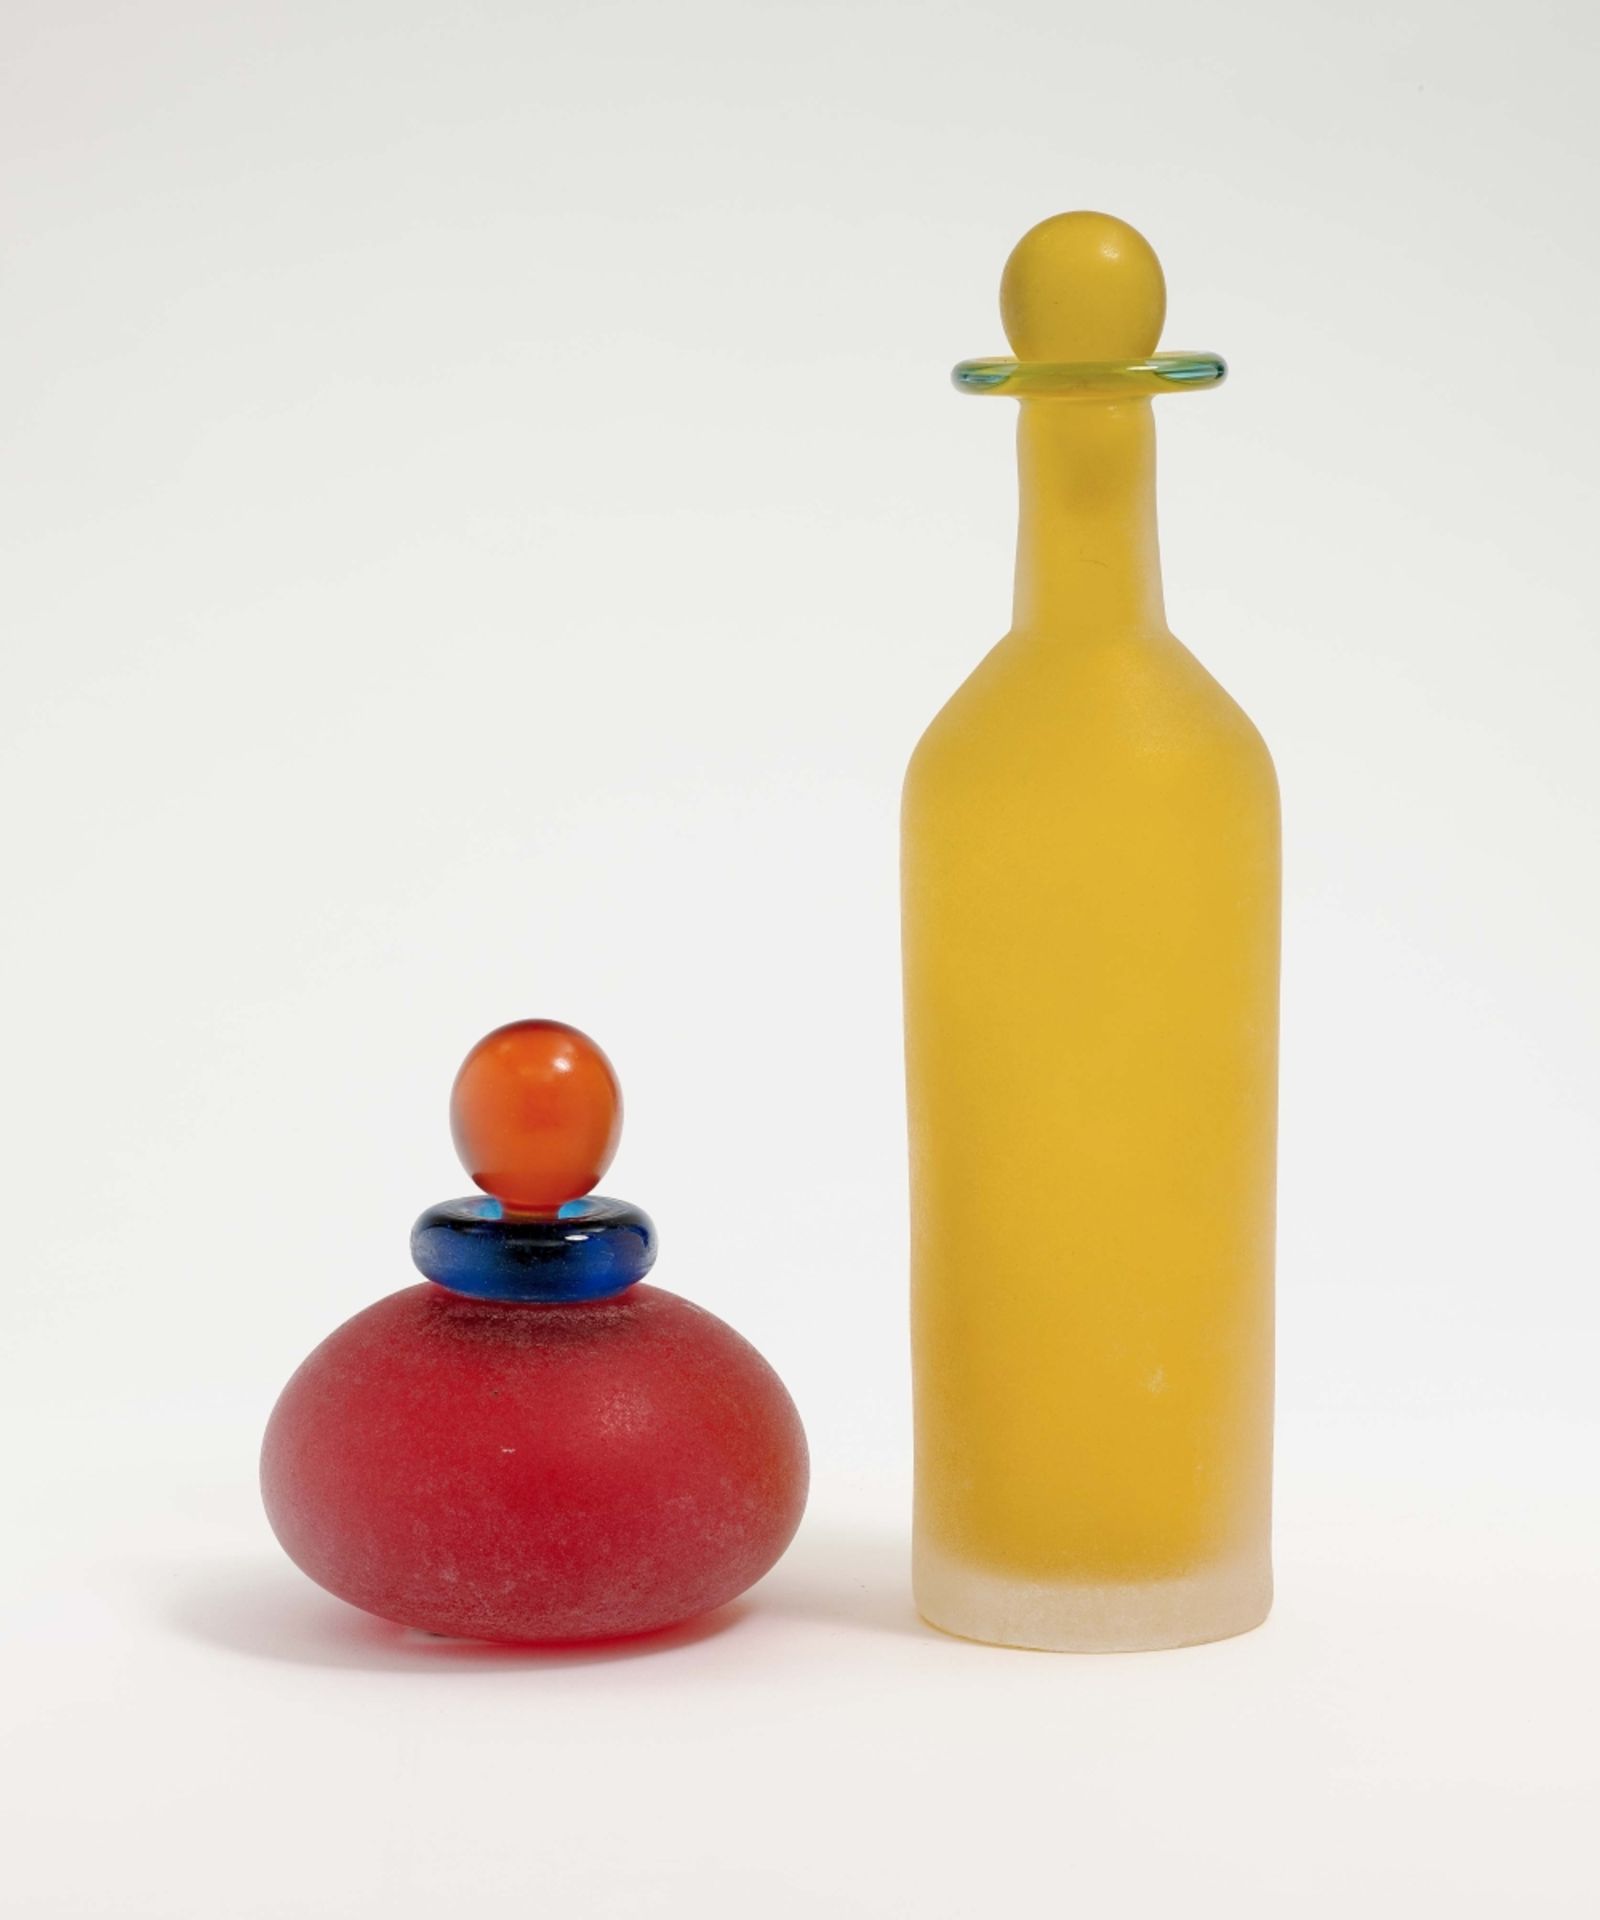 Zwei Flakons Franco Moretti, Murano Glas. Zylindrisch bzw. bauchig. Rot und gelb, eisglasgeätzt.